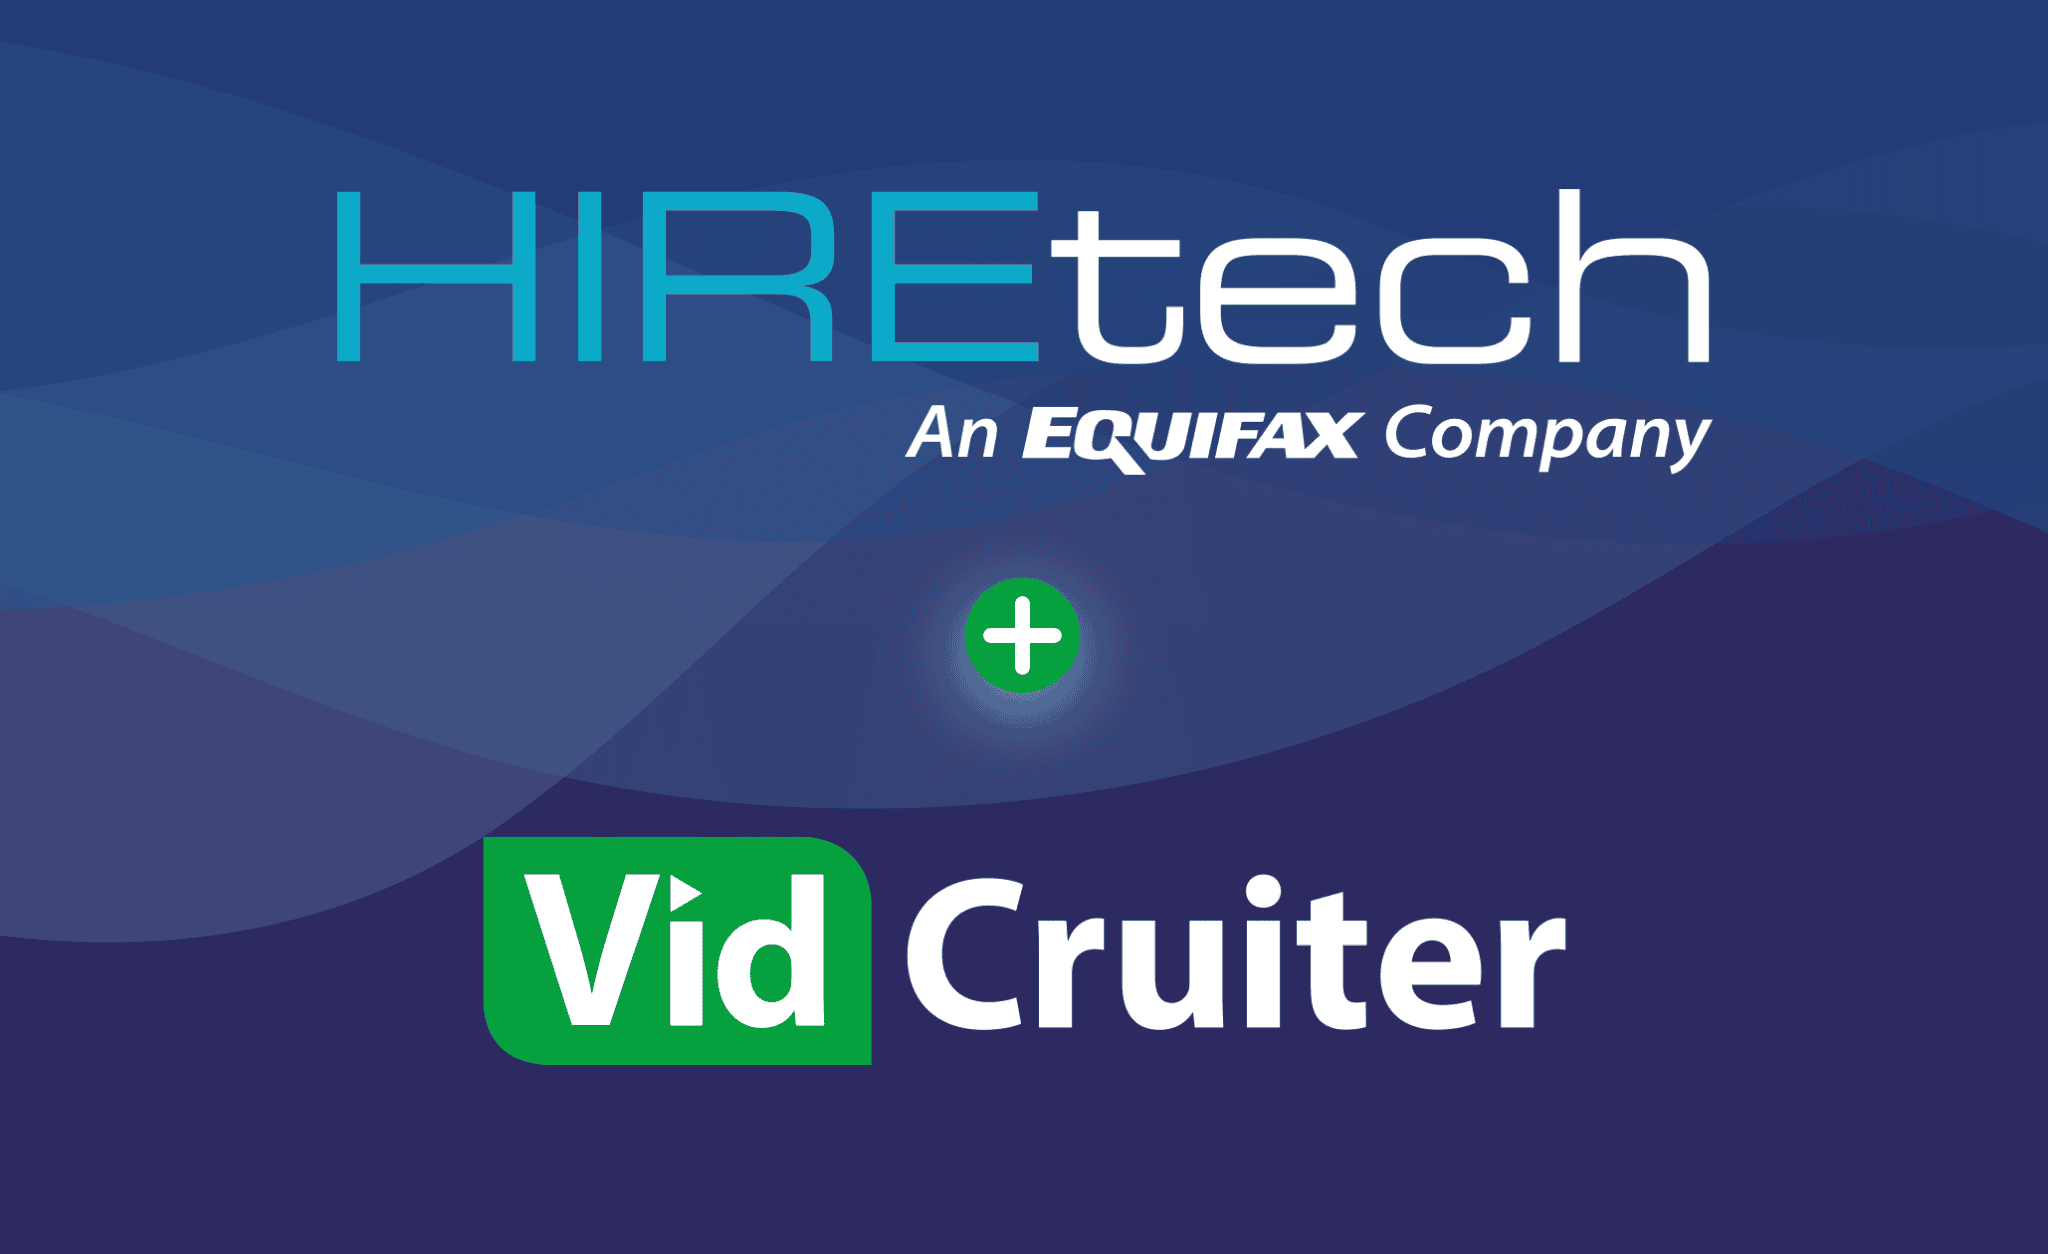 HIREtech and VidCruiter Hero Image